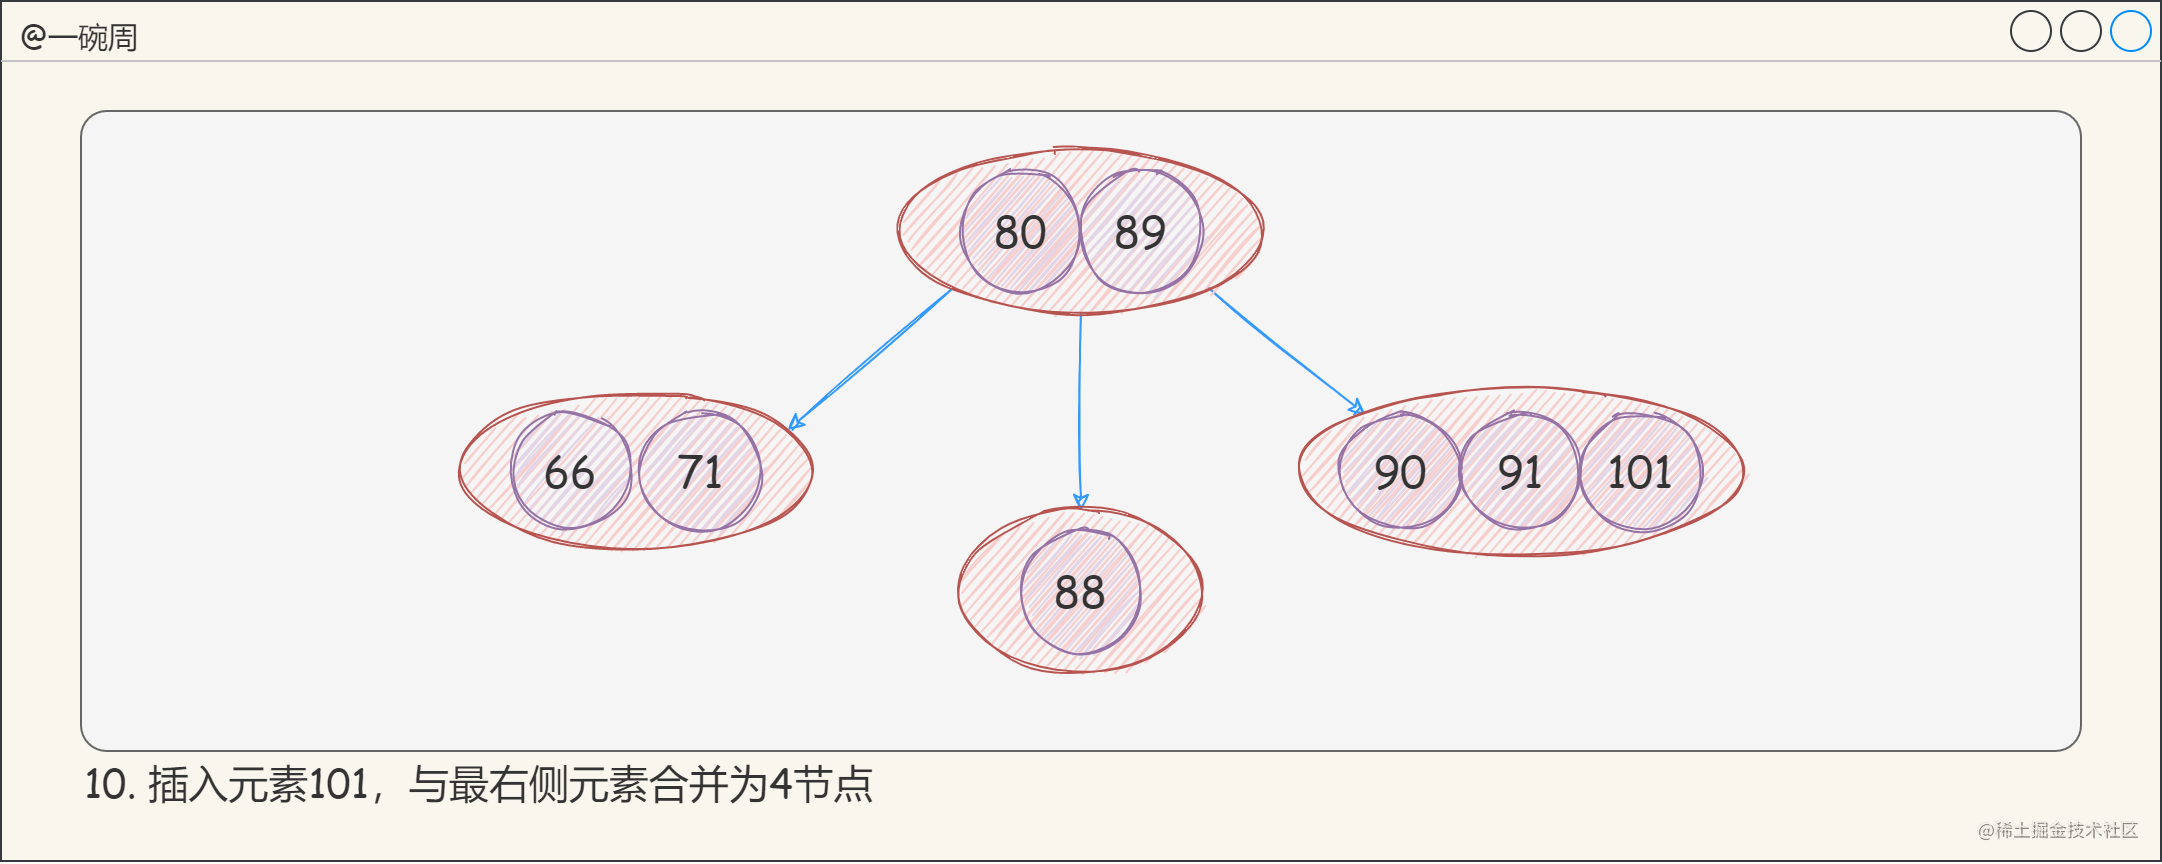 13_2-3-4樹的構建過程6_p5x39Ih_2q.png